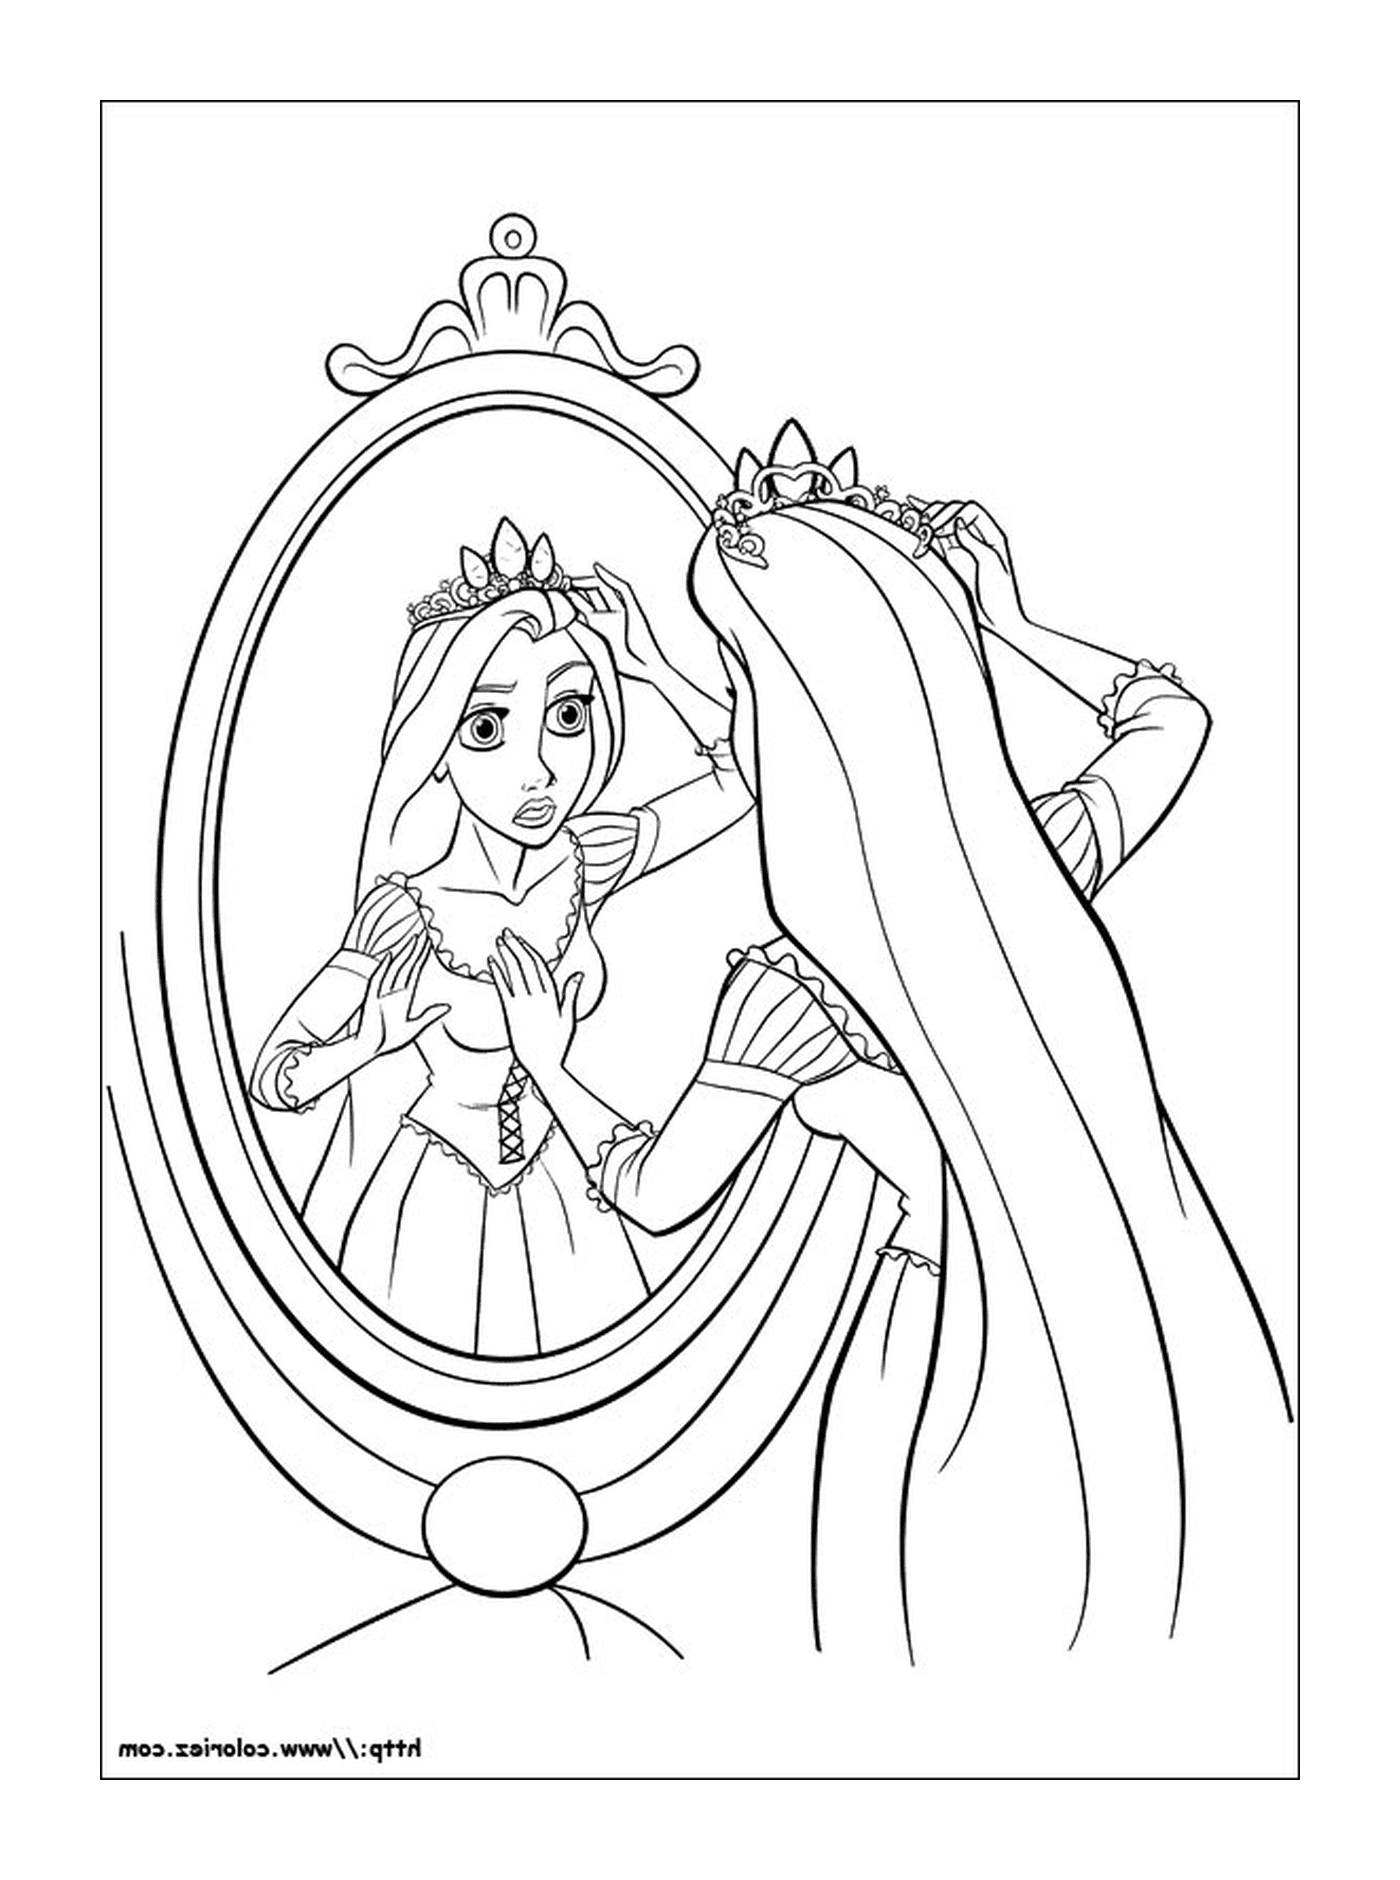  Принцесса Рейпонсе, величественная корона 